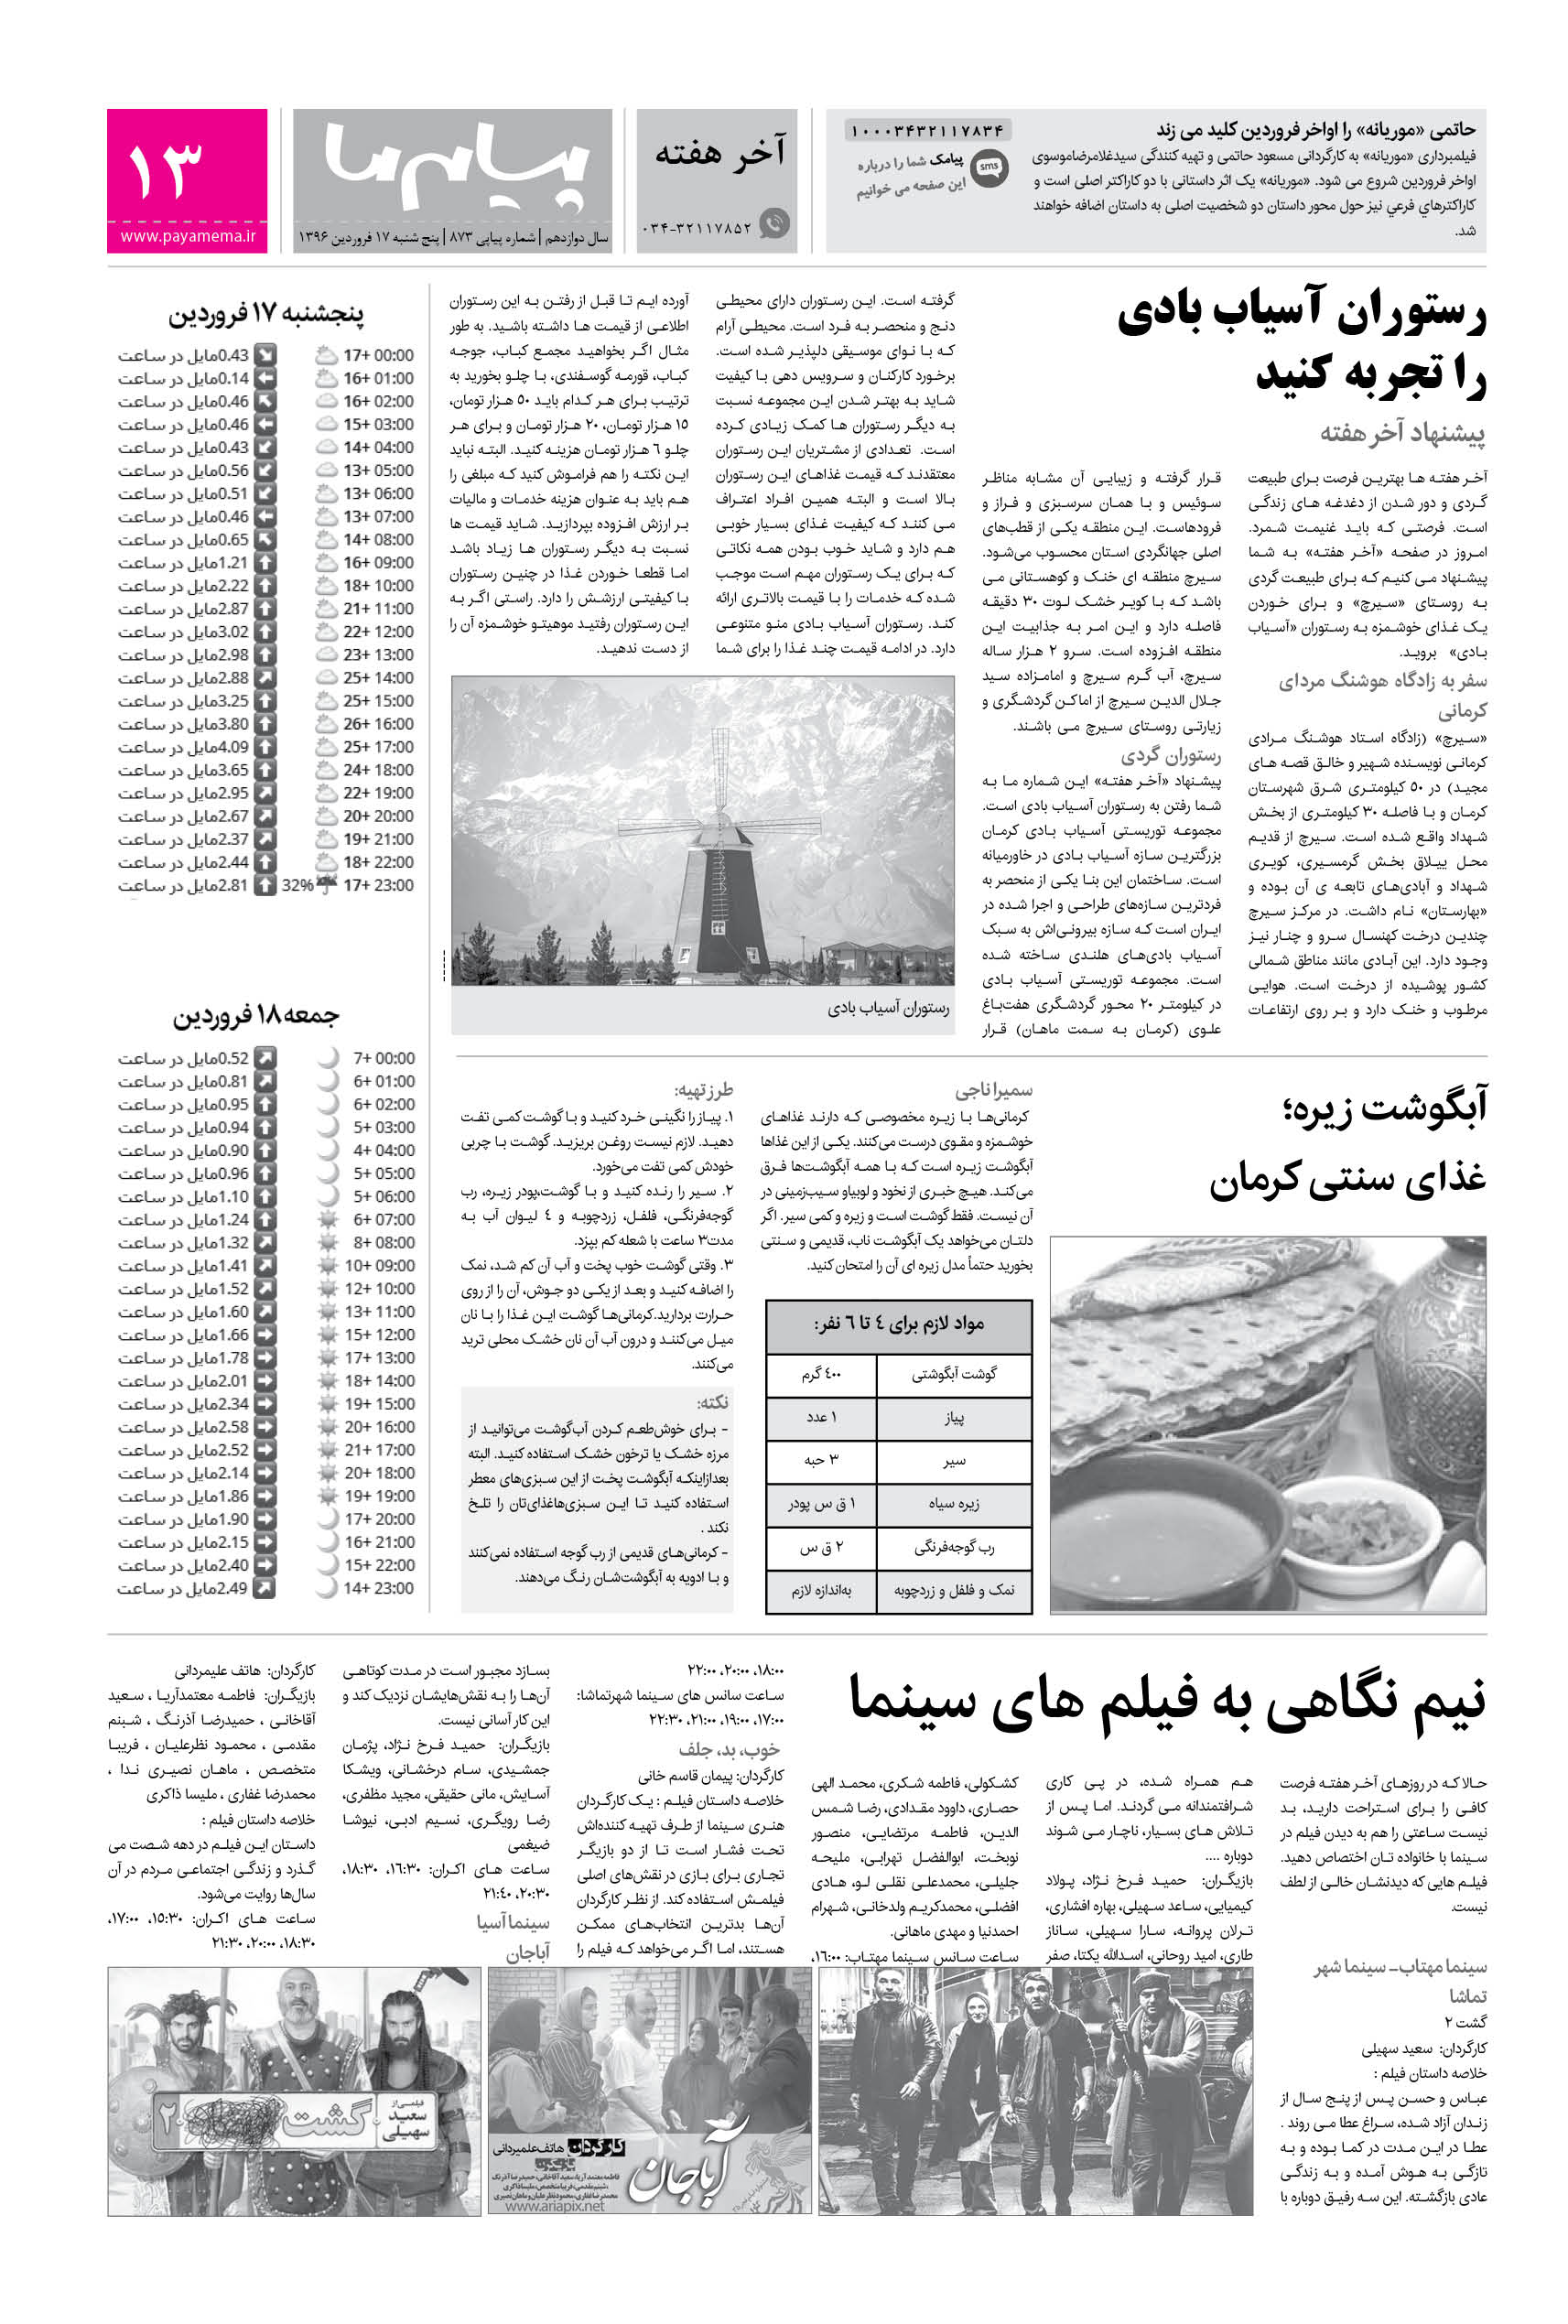 صفحه آخر هفته شماره 873 روزنامه پیام ما